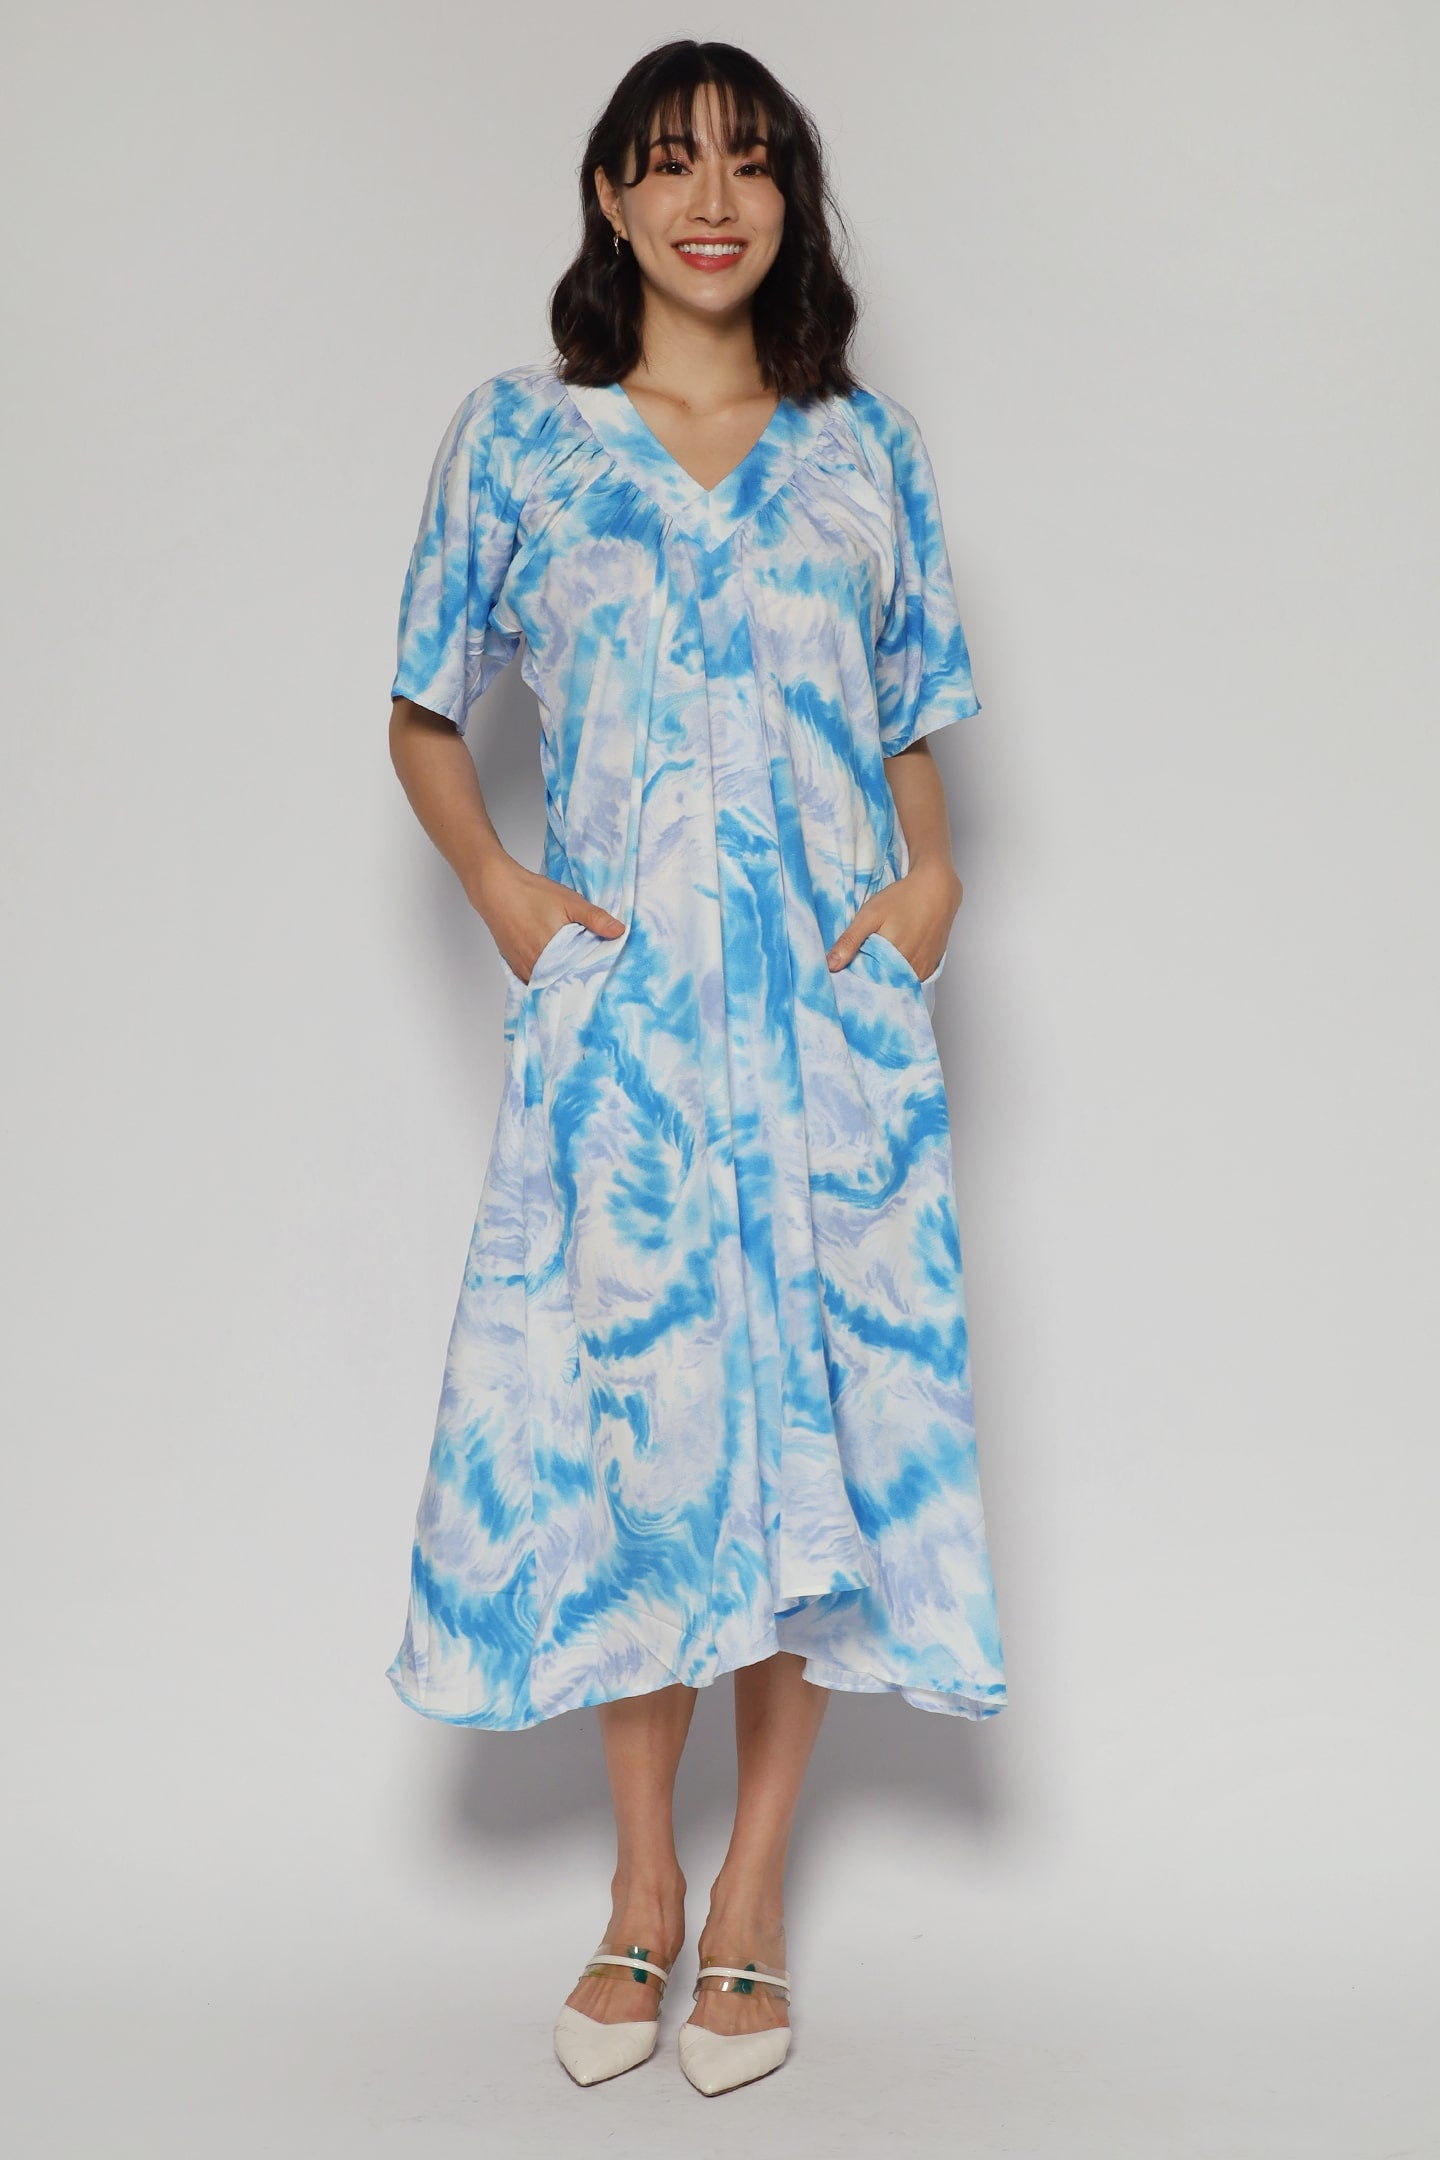 Whitney V Dress in Cloud Tie Dye